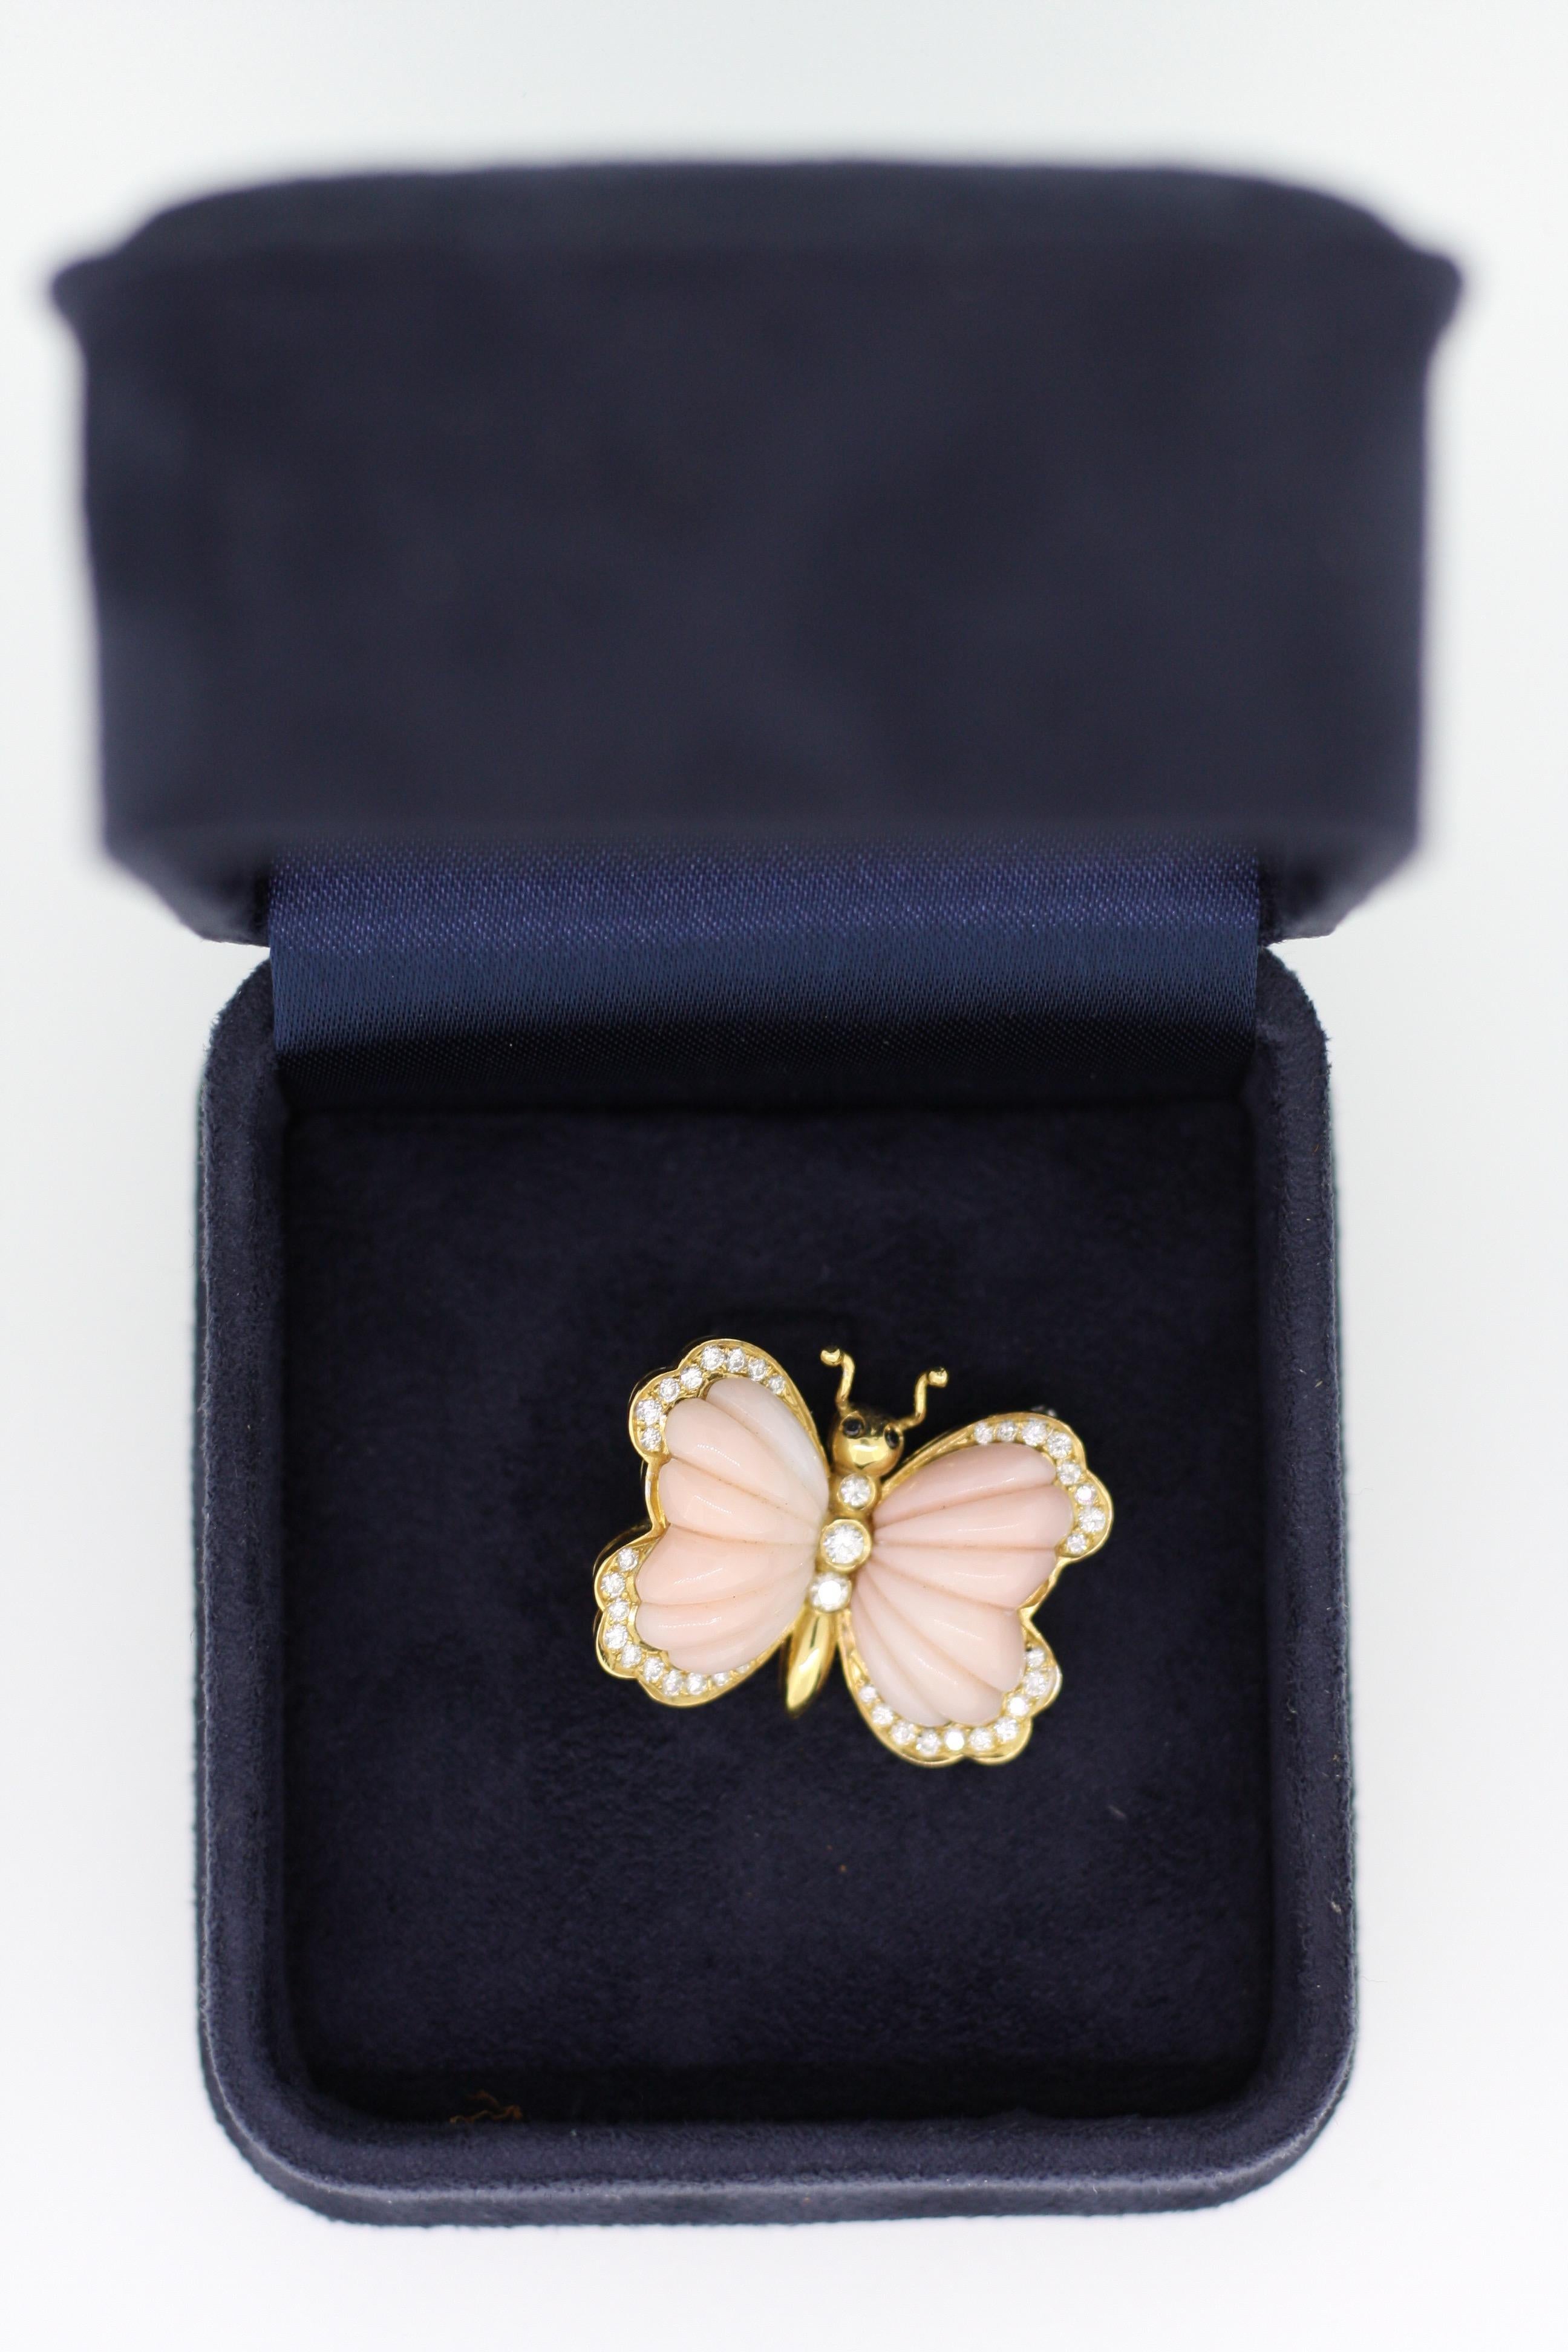 Women's or Men's Butterfly Brooch in Coral in 18 Karat Gold